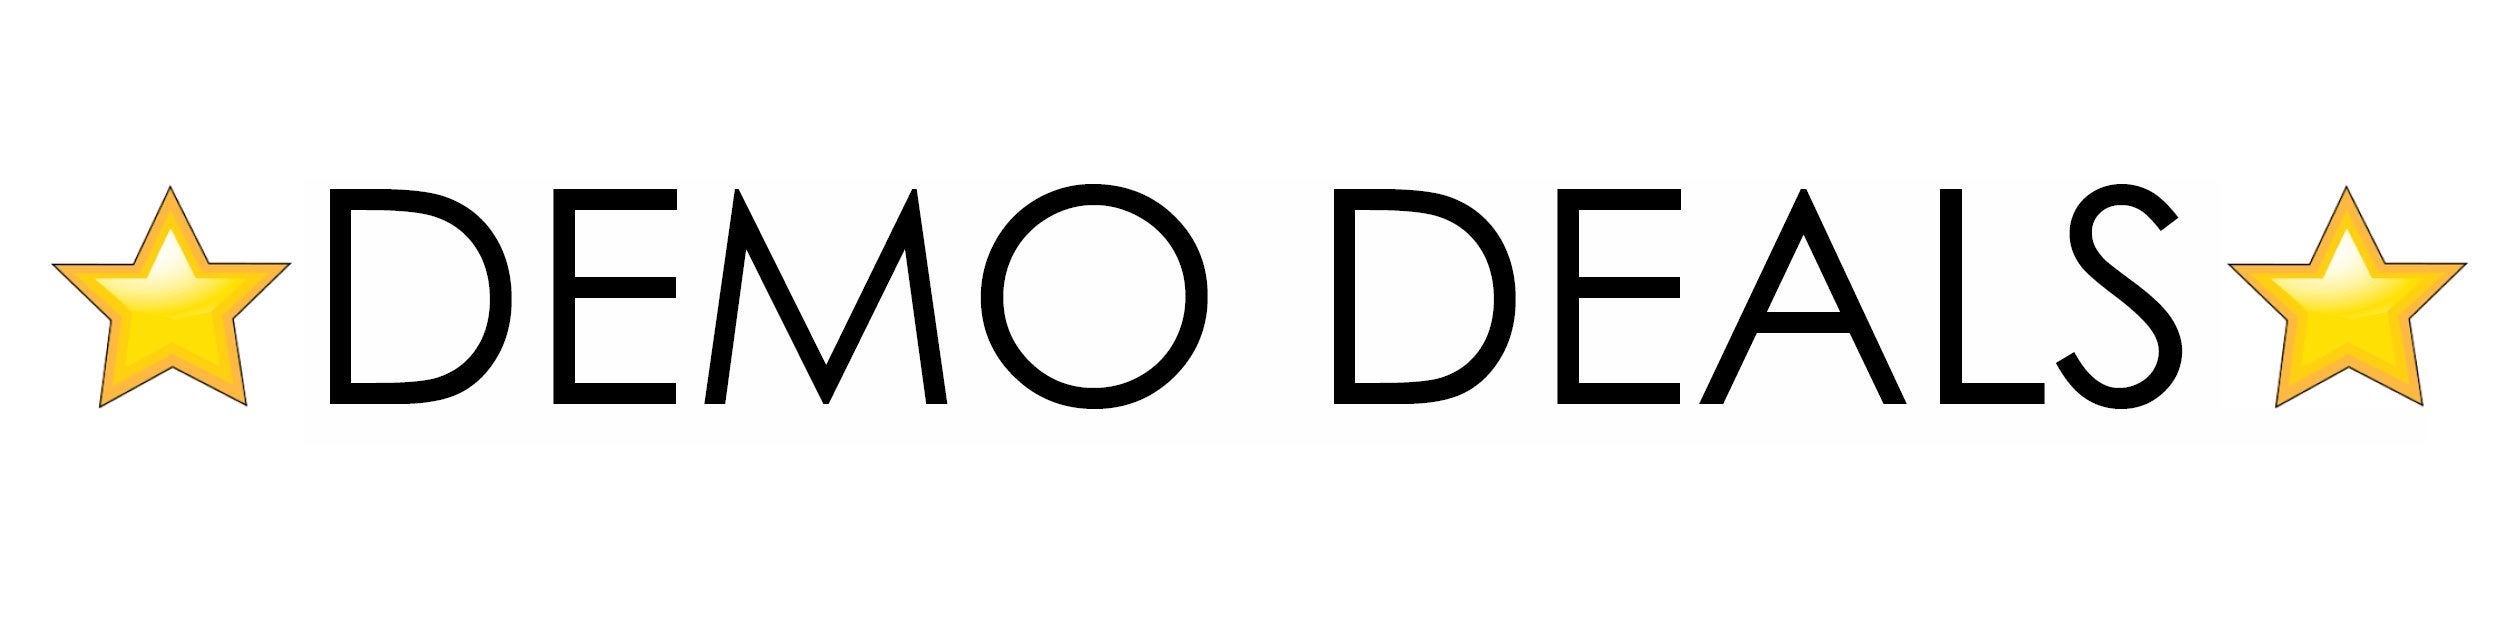 demo deals logo